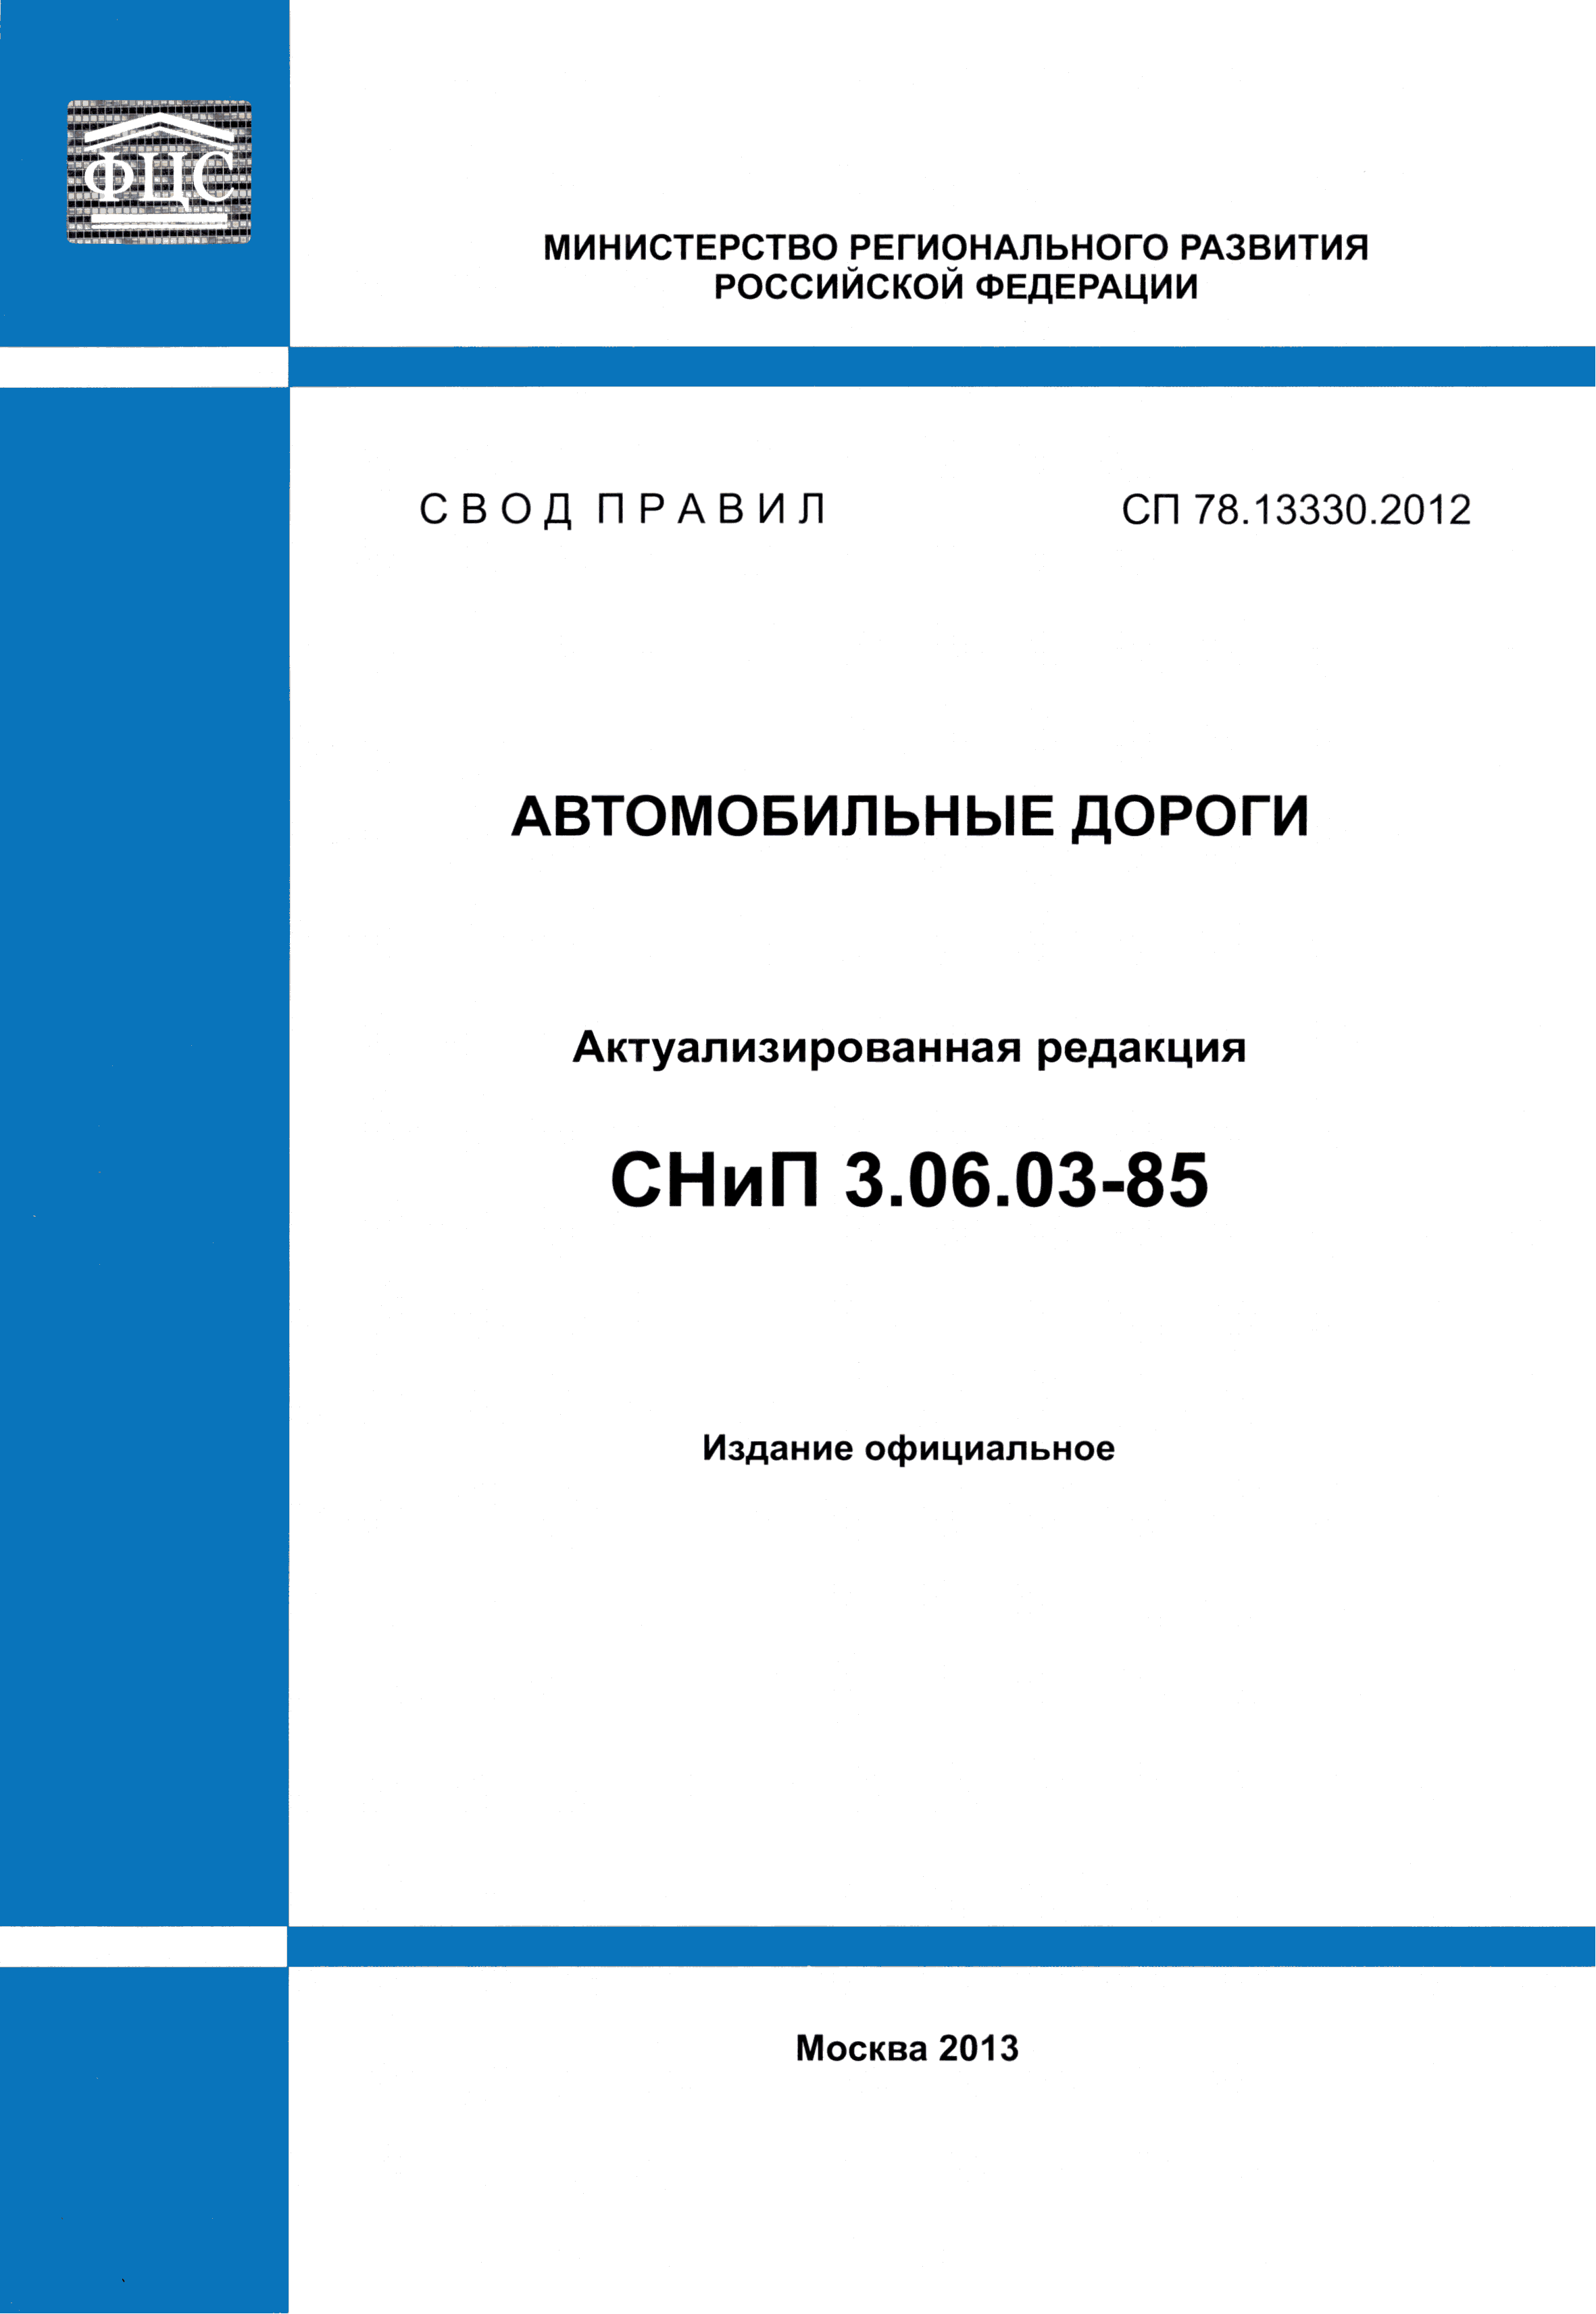 СП 78.13330.2012